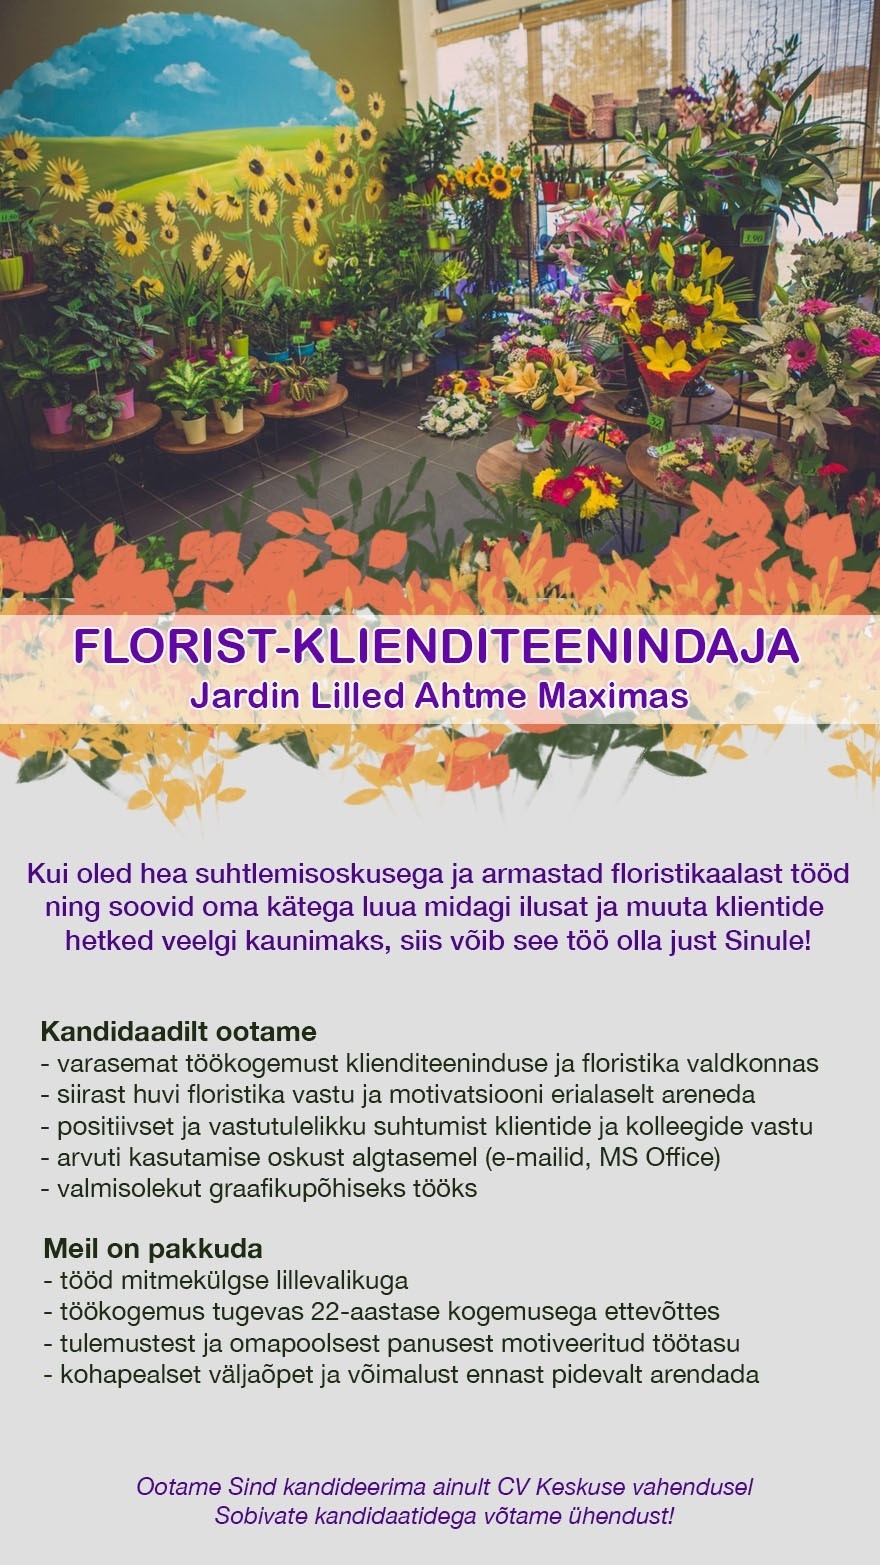 Jardin OÜ Florist-klienditeenidaja Ahtmes